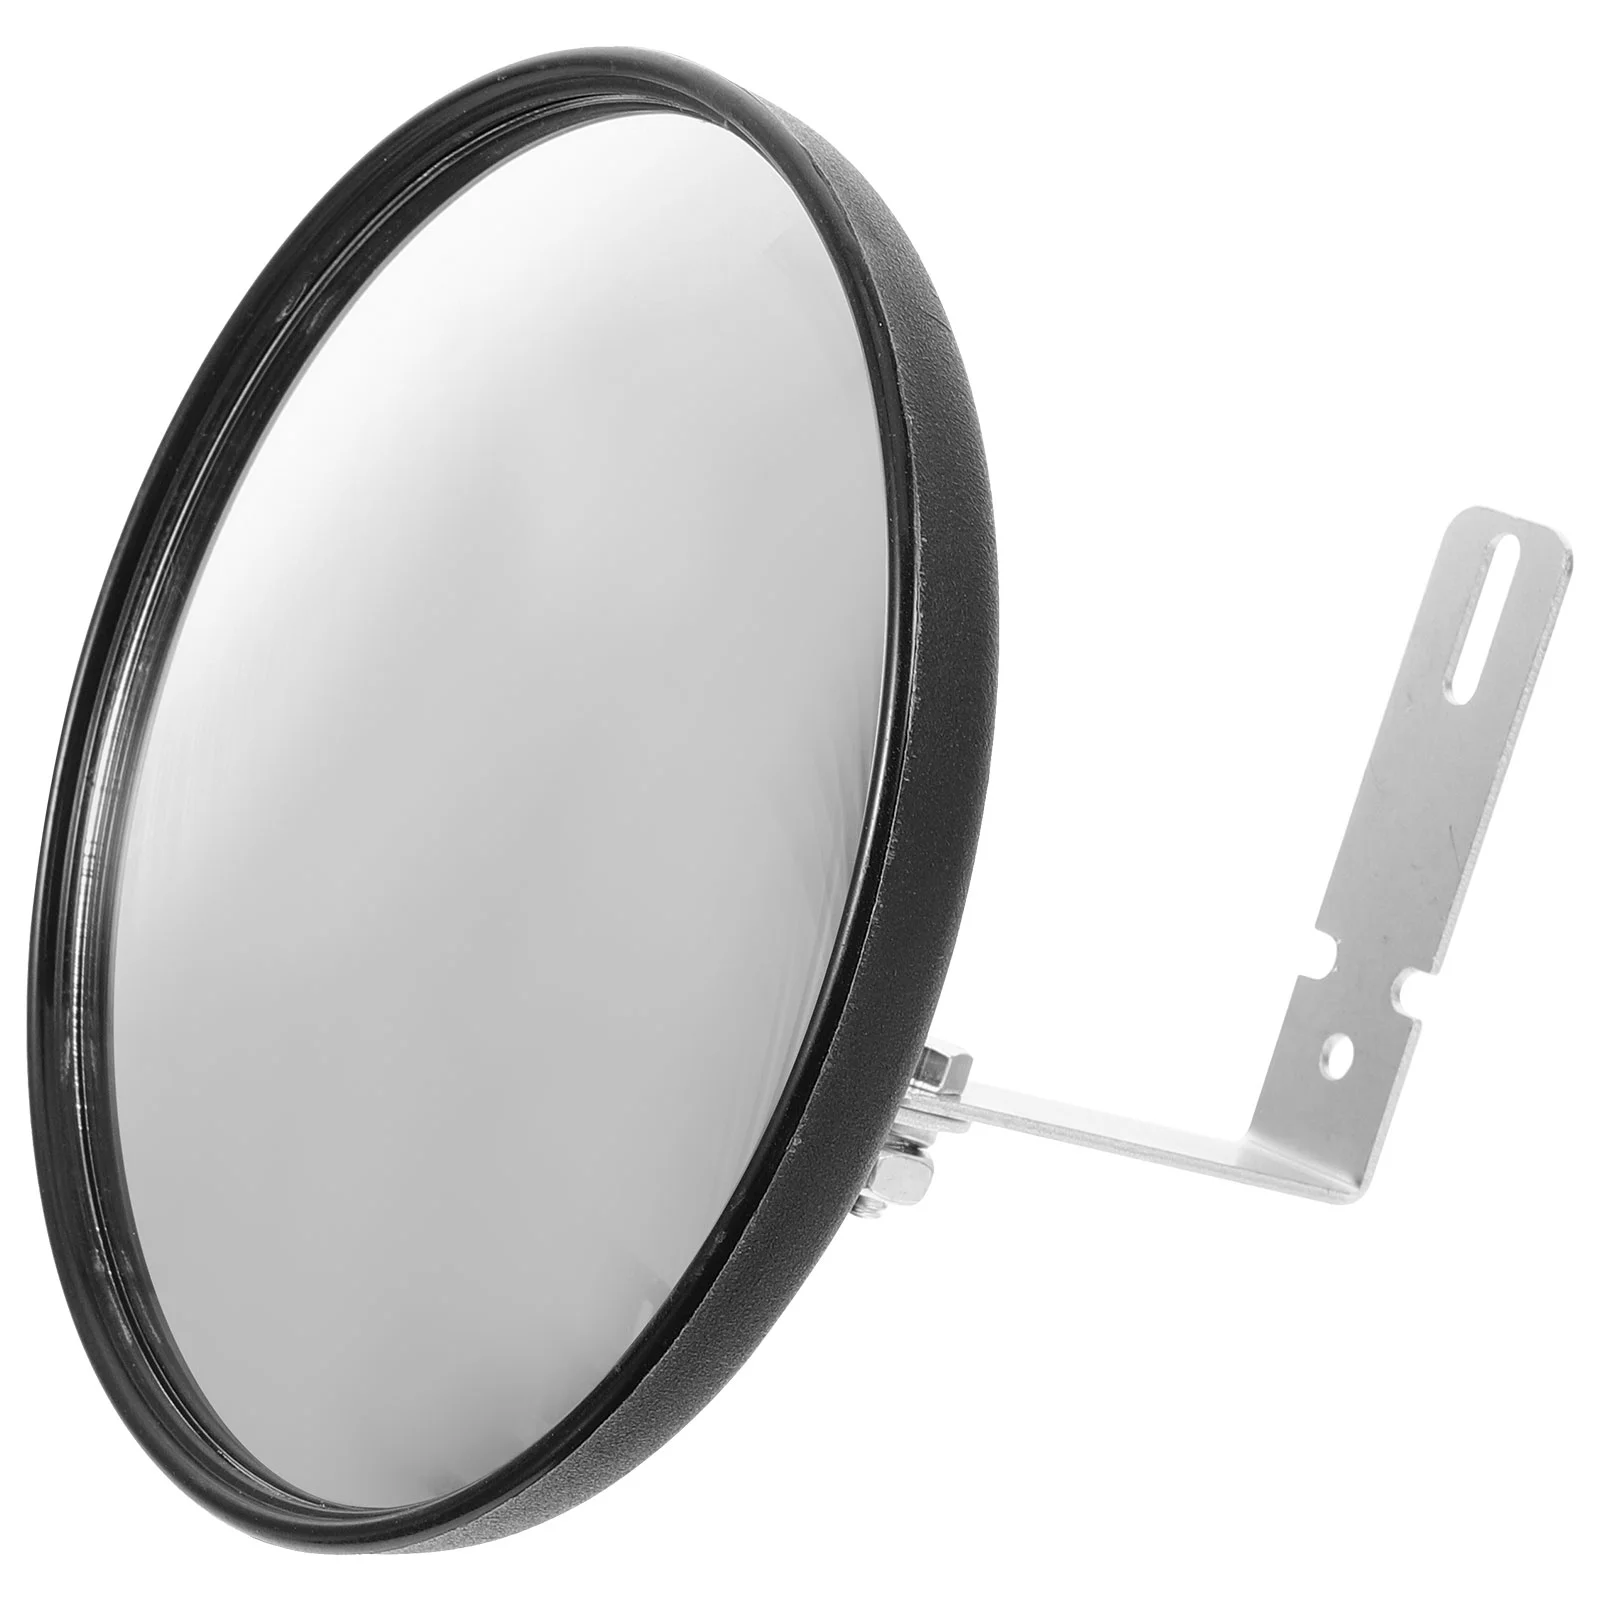 

Широкоугольное зеркало для обзора слепых зон гаража, зеркало для безопасности дорожного движения, выпуклое зеркало для слепых зон, зеркало для офиса, супермаркета, гаража